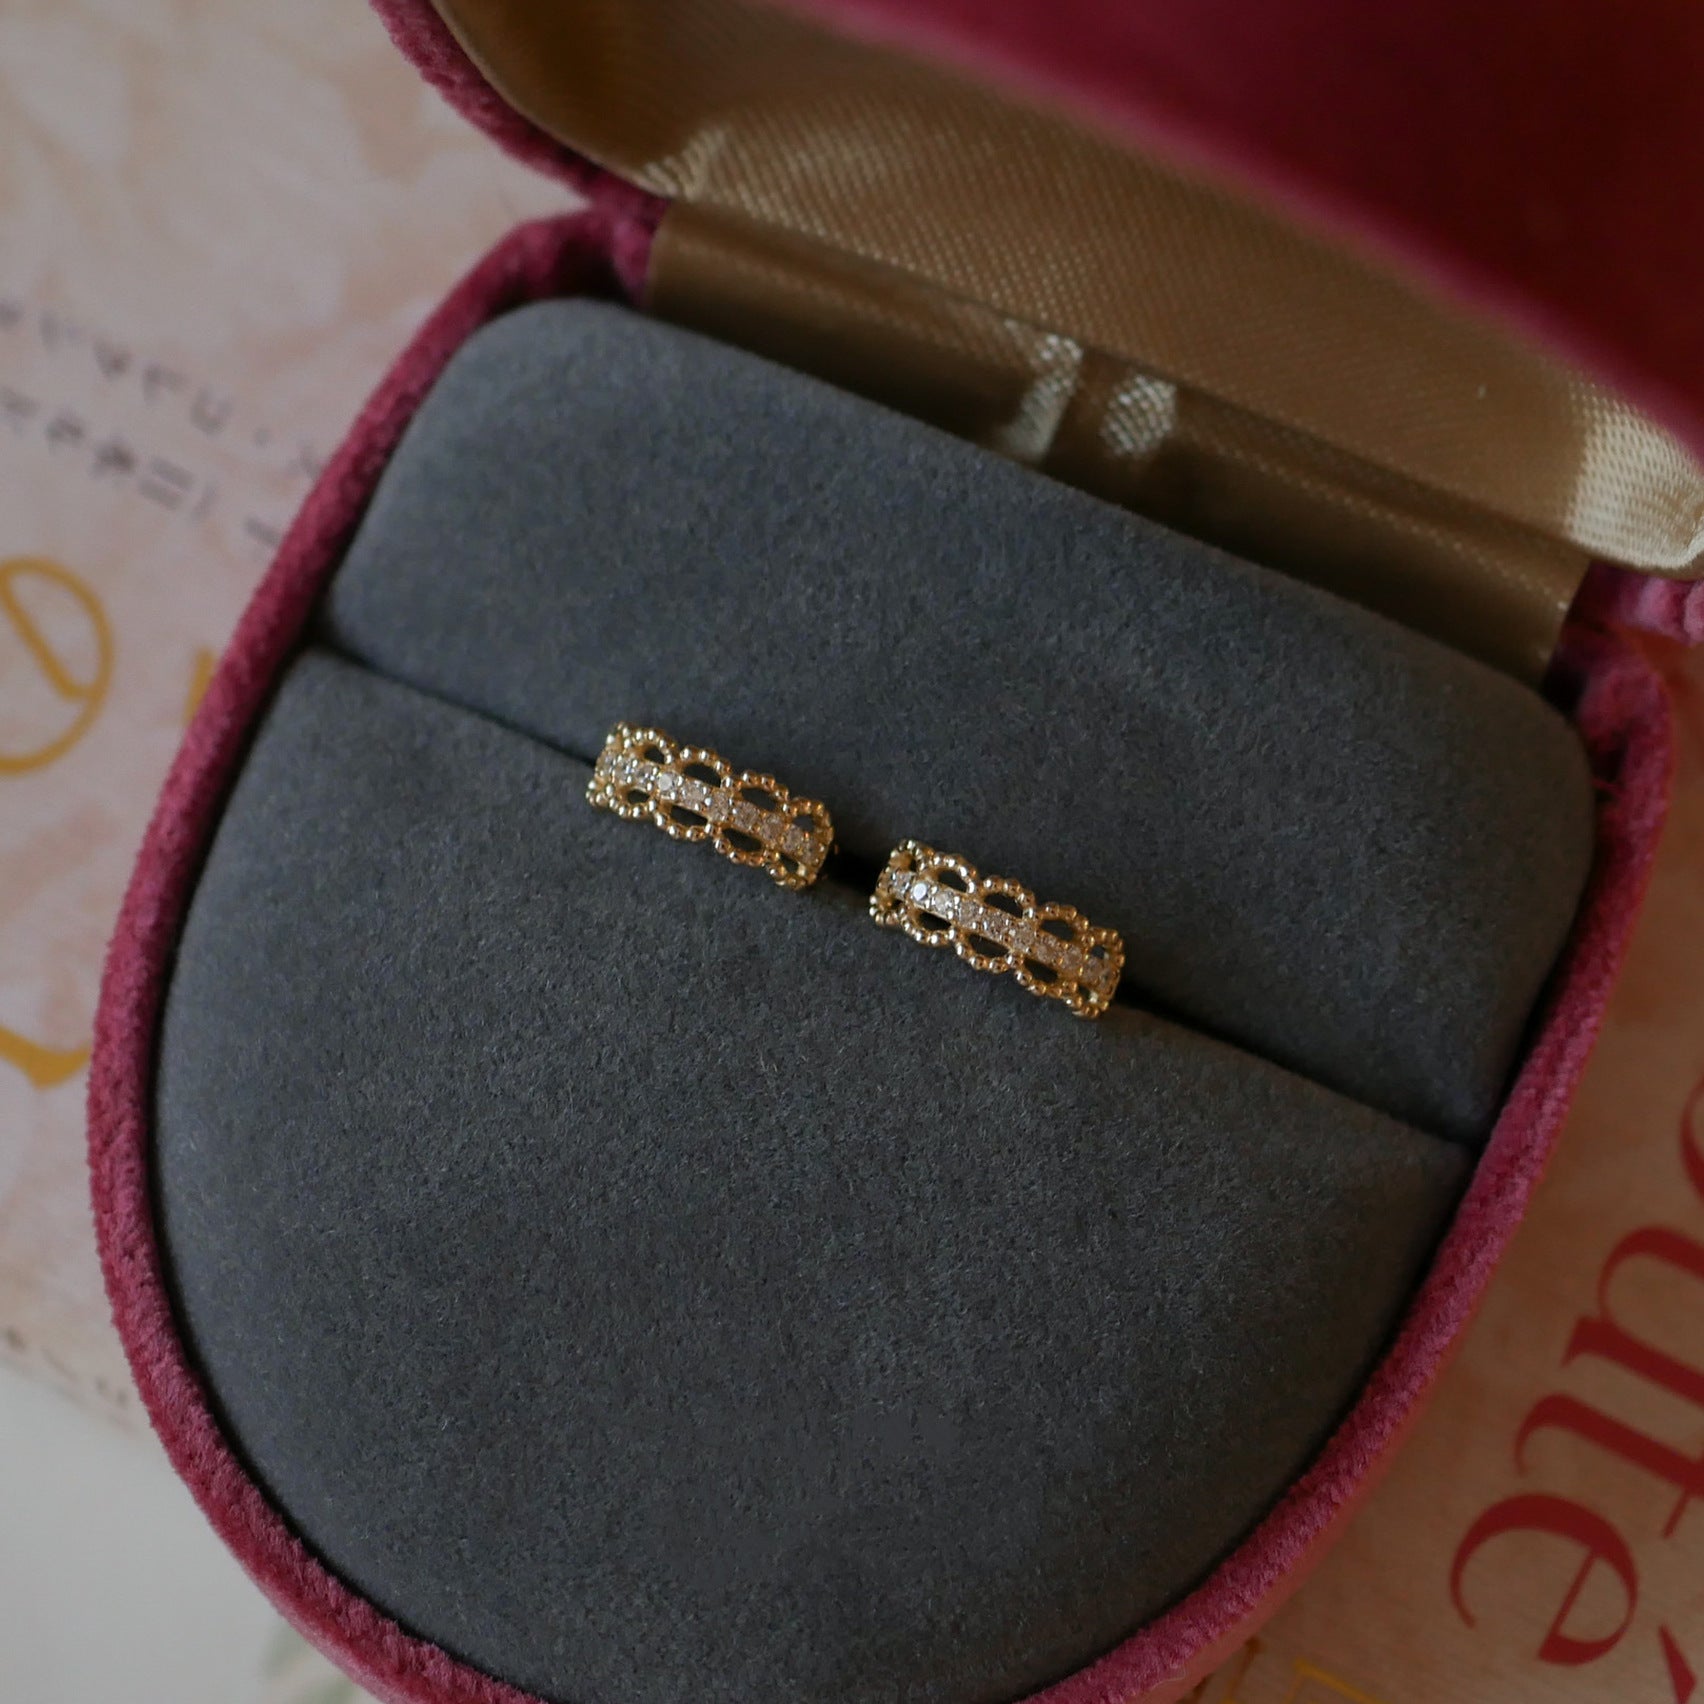 Dainty S925 Sterling Silver Zircon Lace Earrings CZ Small Hoop Earrings, 18k Gold Plated Jewelry AL949